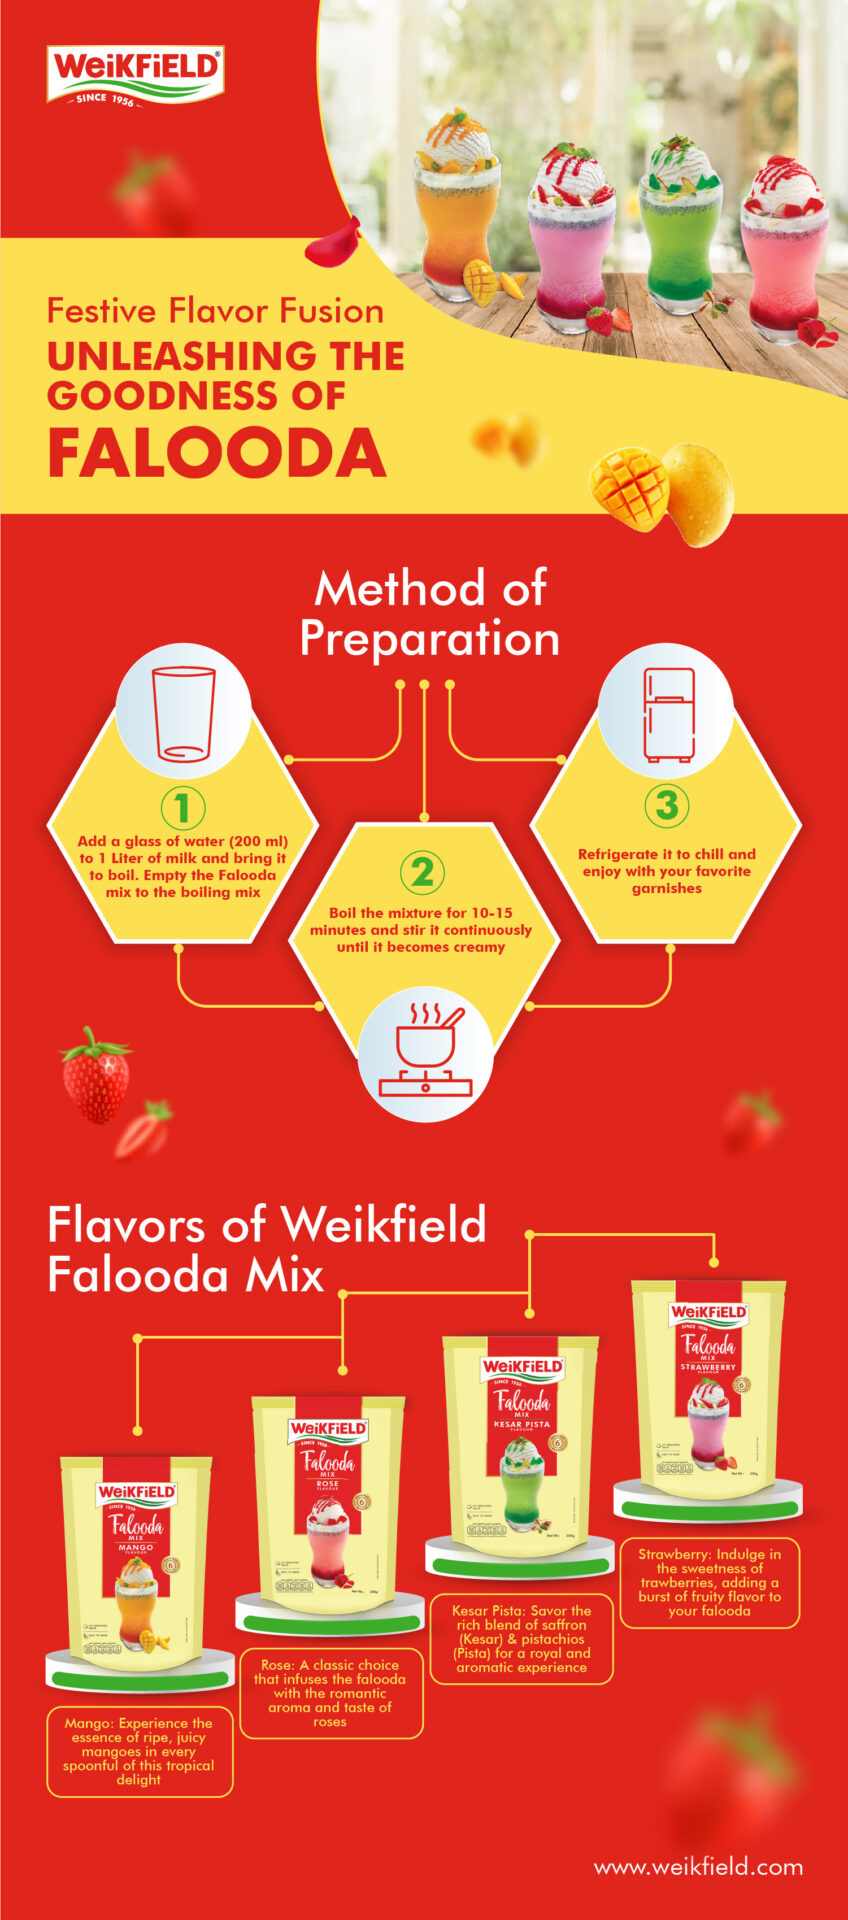 Festive Flavor Fusion – Unleashing the Goodness of Falooda